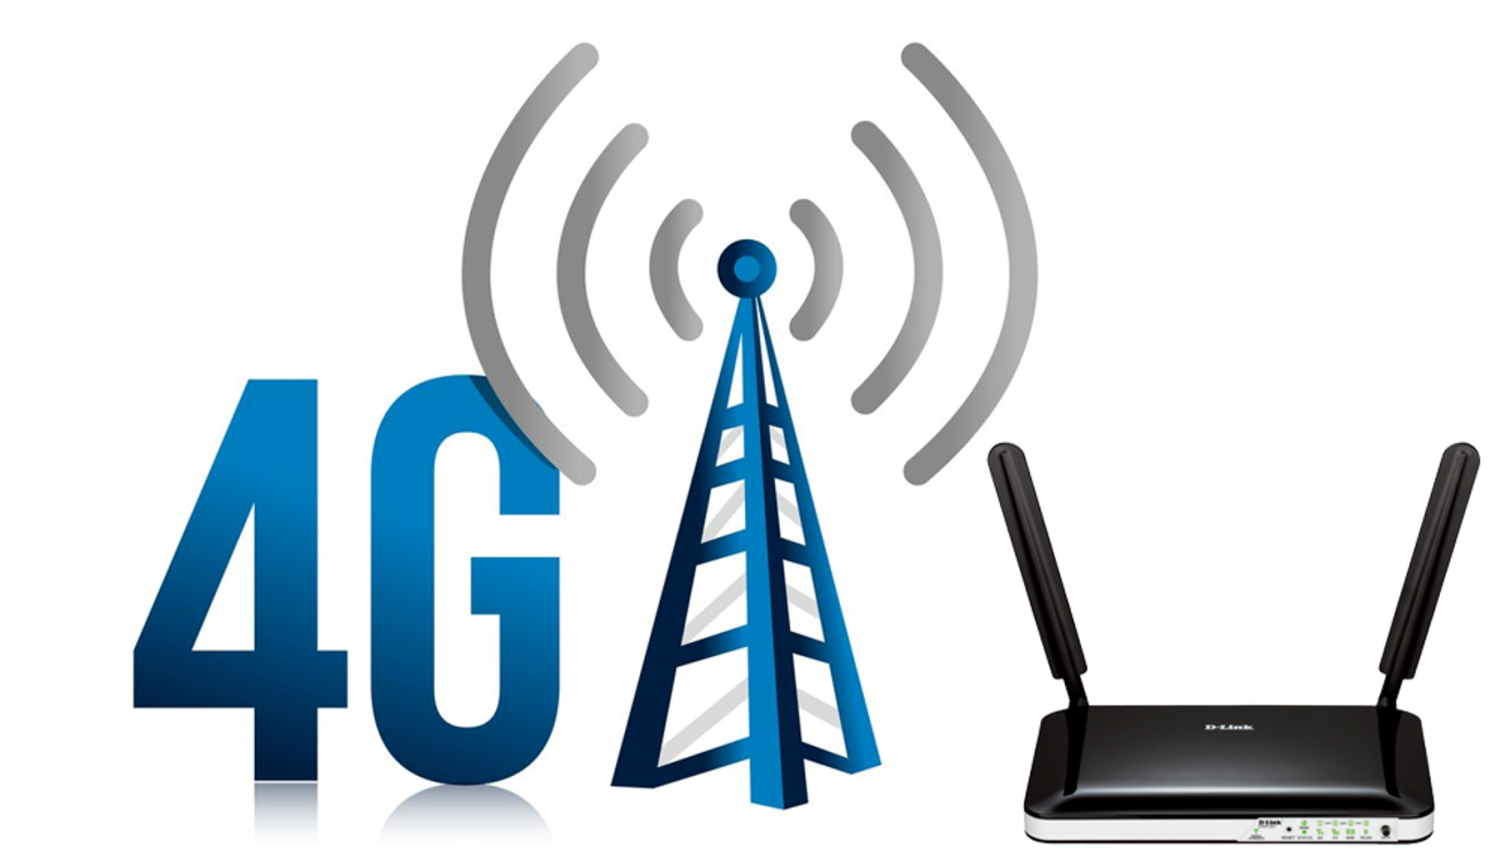 Переход с 3g на 4g. Сети сотовой связи 4g. 4g LTE. 3g 4g LTE device. Мобильная сеть 4g (WIMAX va LTE).